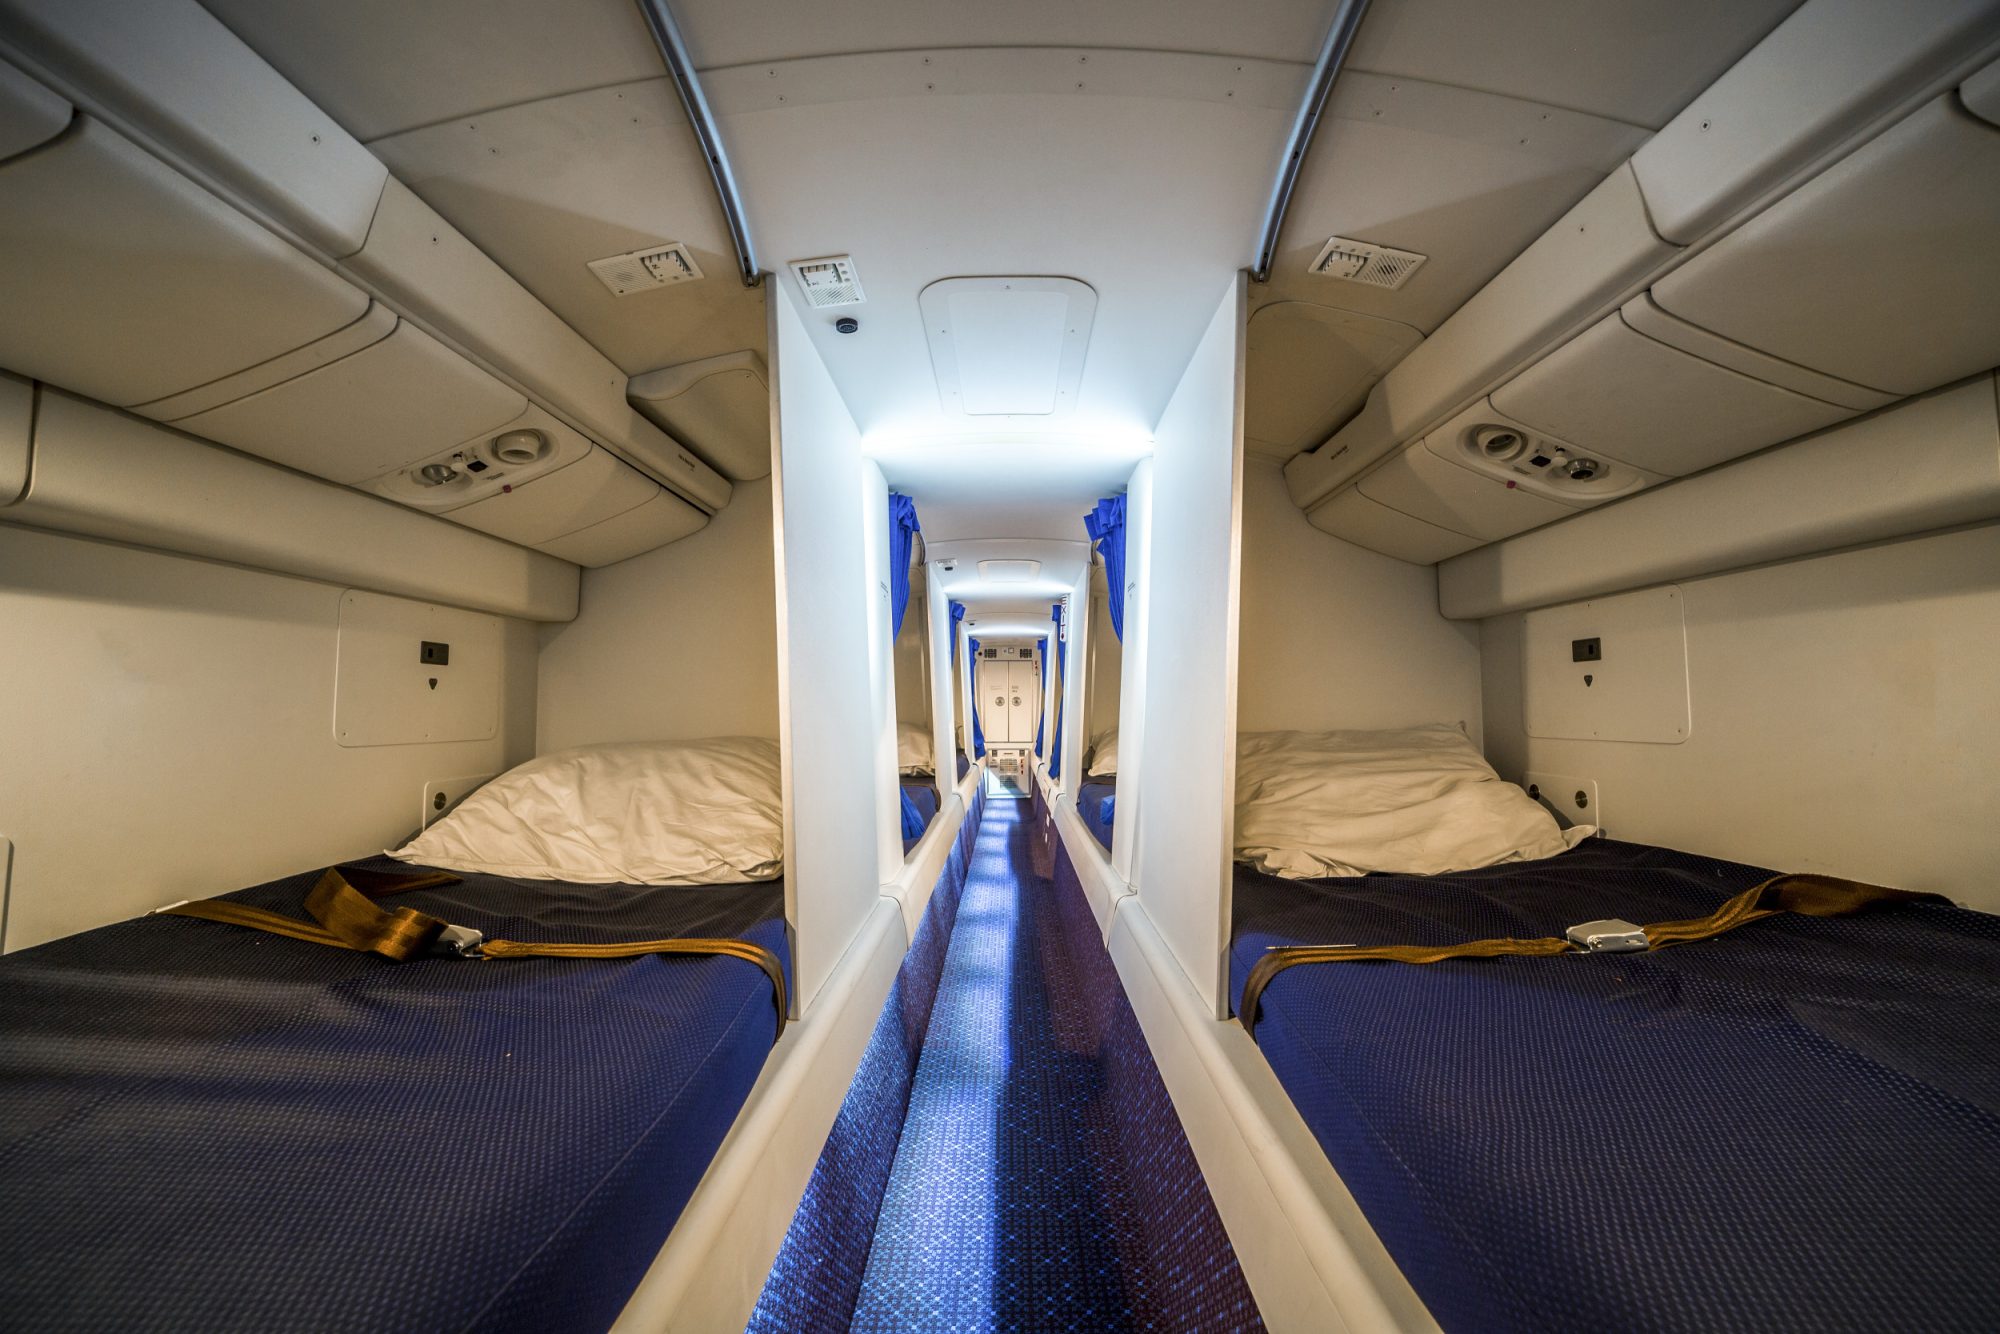 غرف نوم سرية لطاقم الطيران